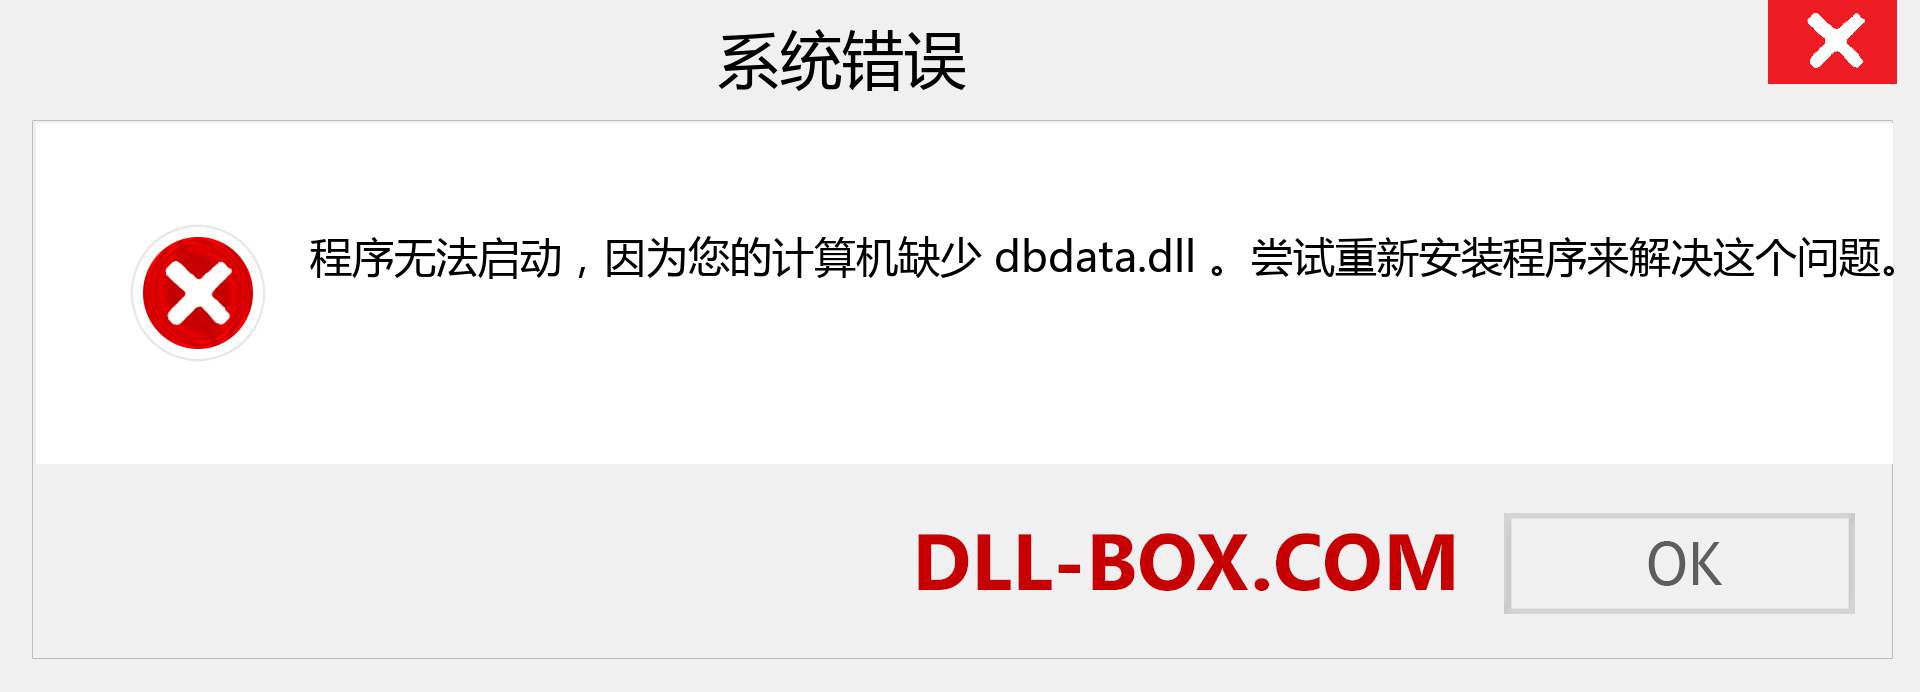 dbdata.dll 文件丢失？。 适用于 Windows 7、8、10 的下载 - 修复 Windows、照片、图像上的 dbdata dll 丢失错误